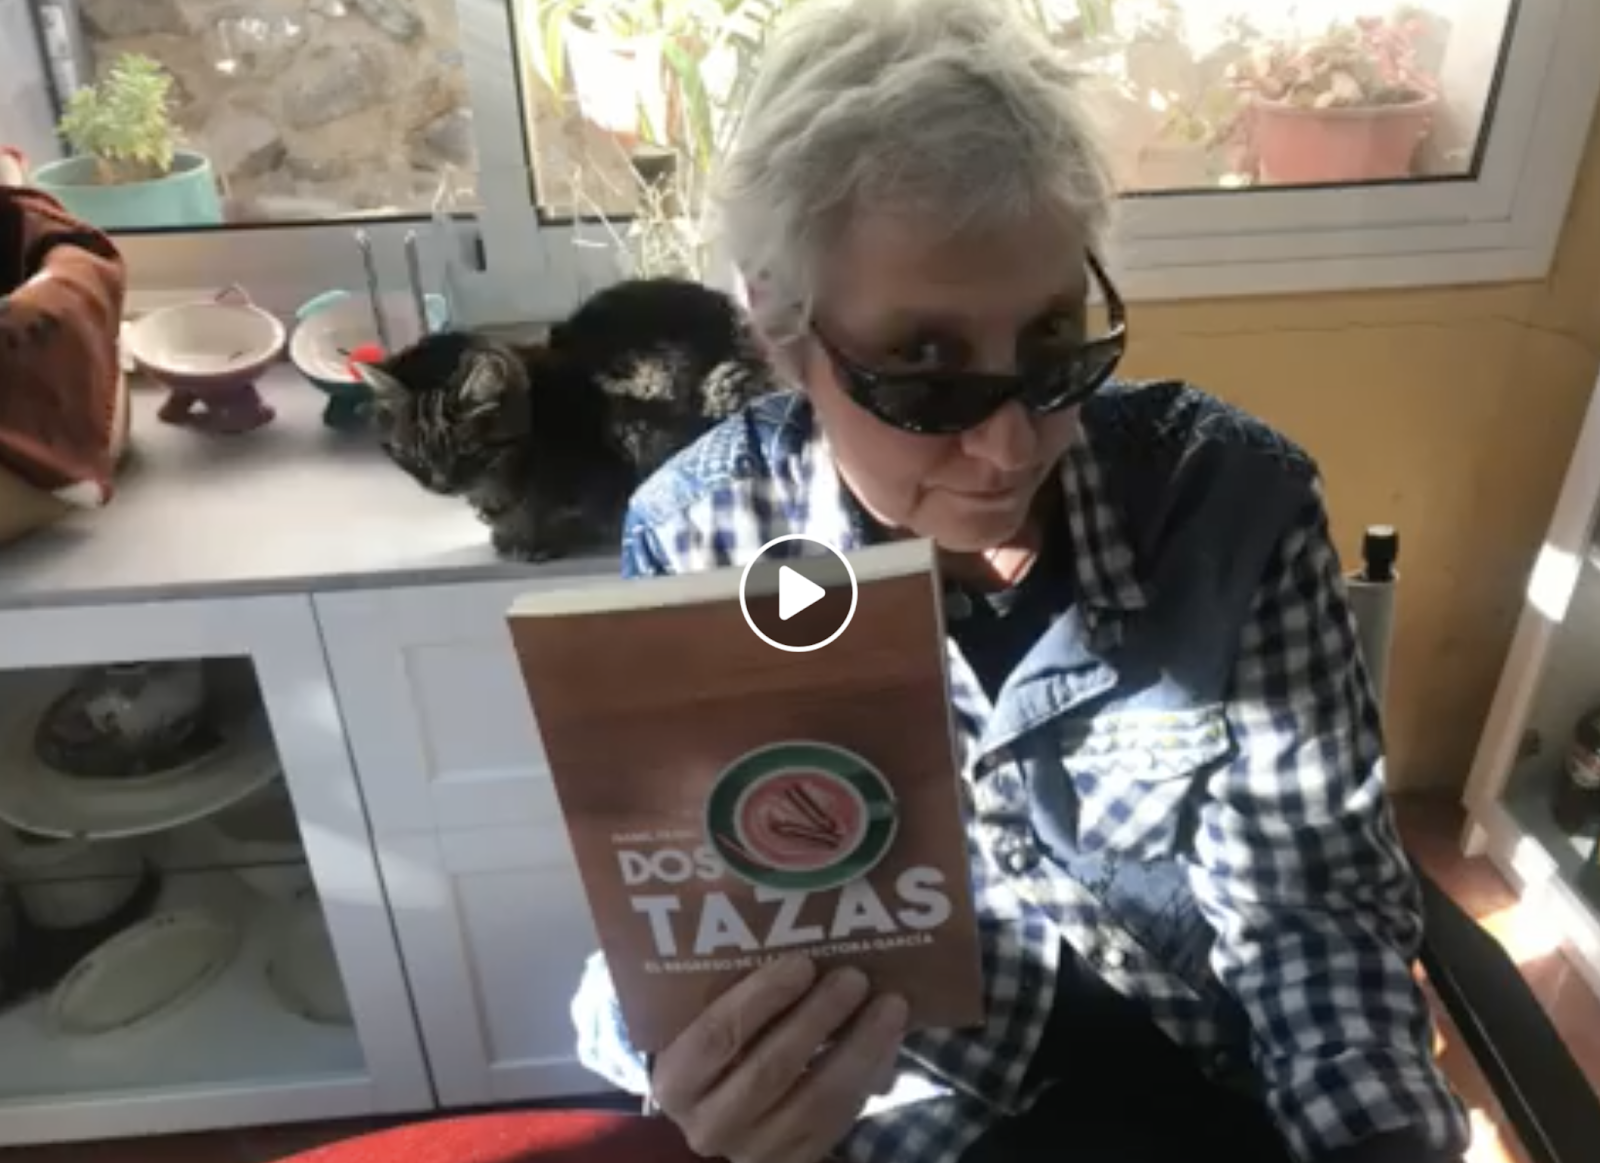 Dos Tazas. Trailer Book